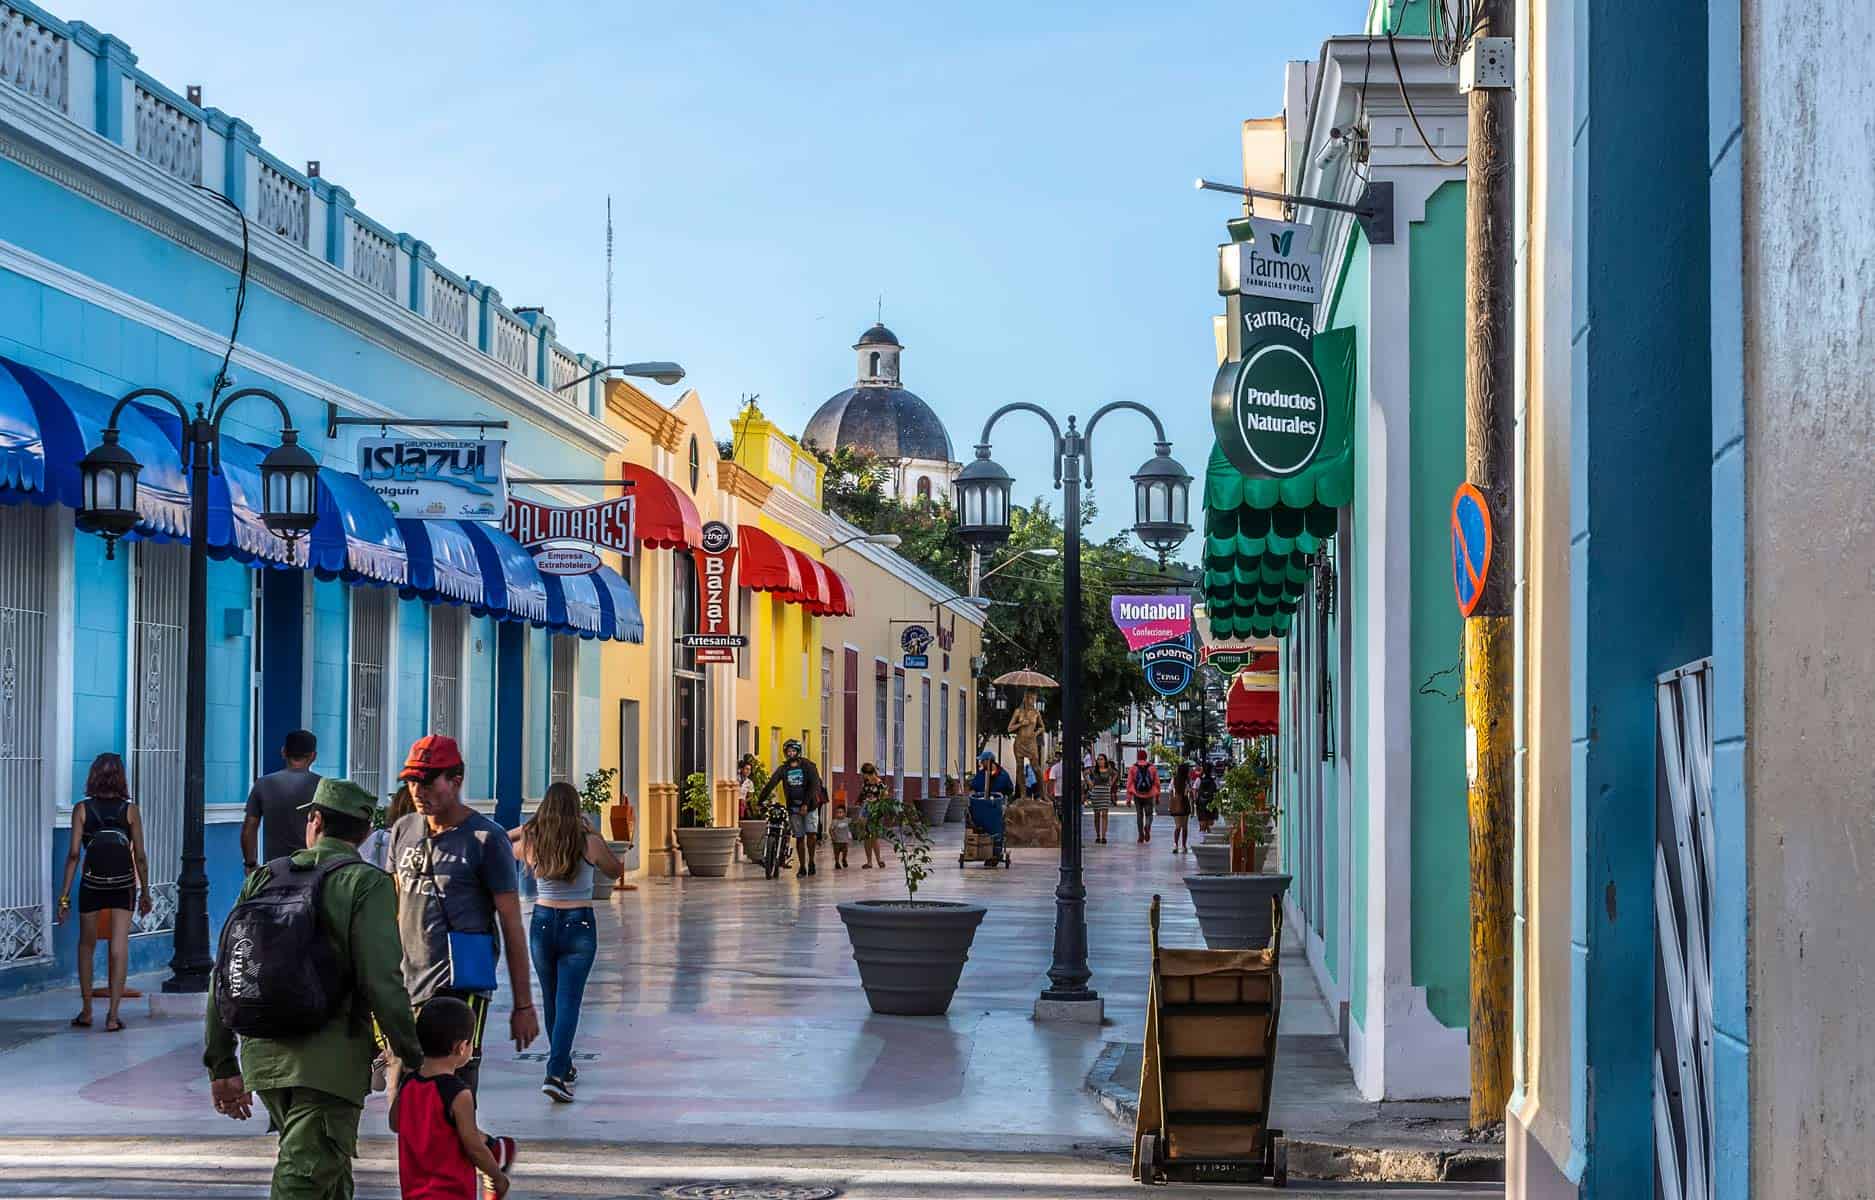 Nueva Tienda para Ventas a Plazos en Holguín